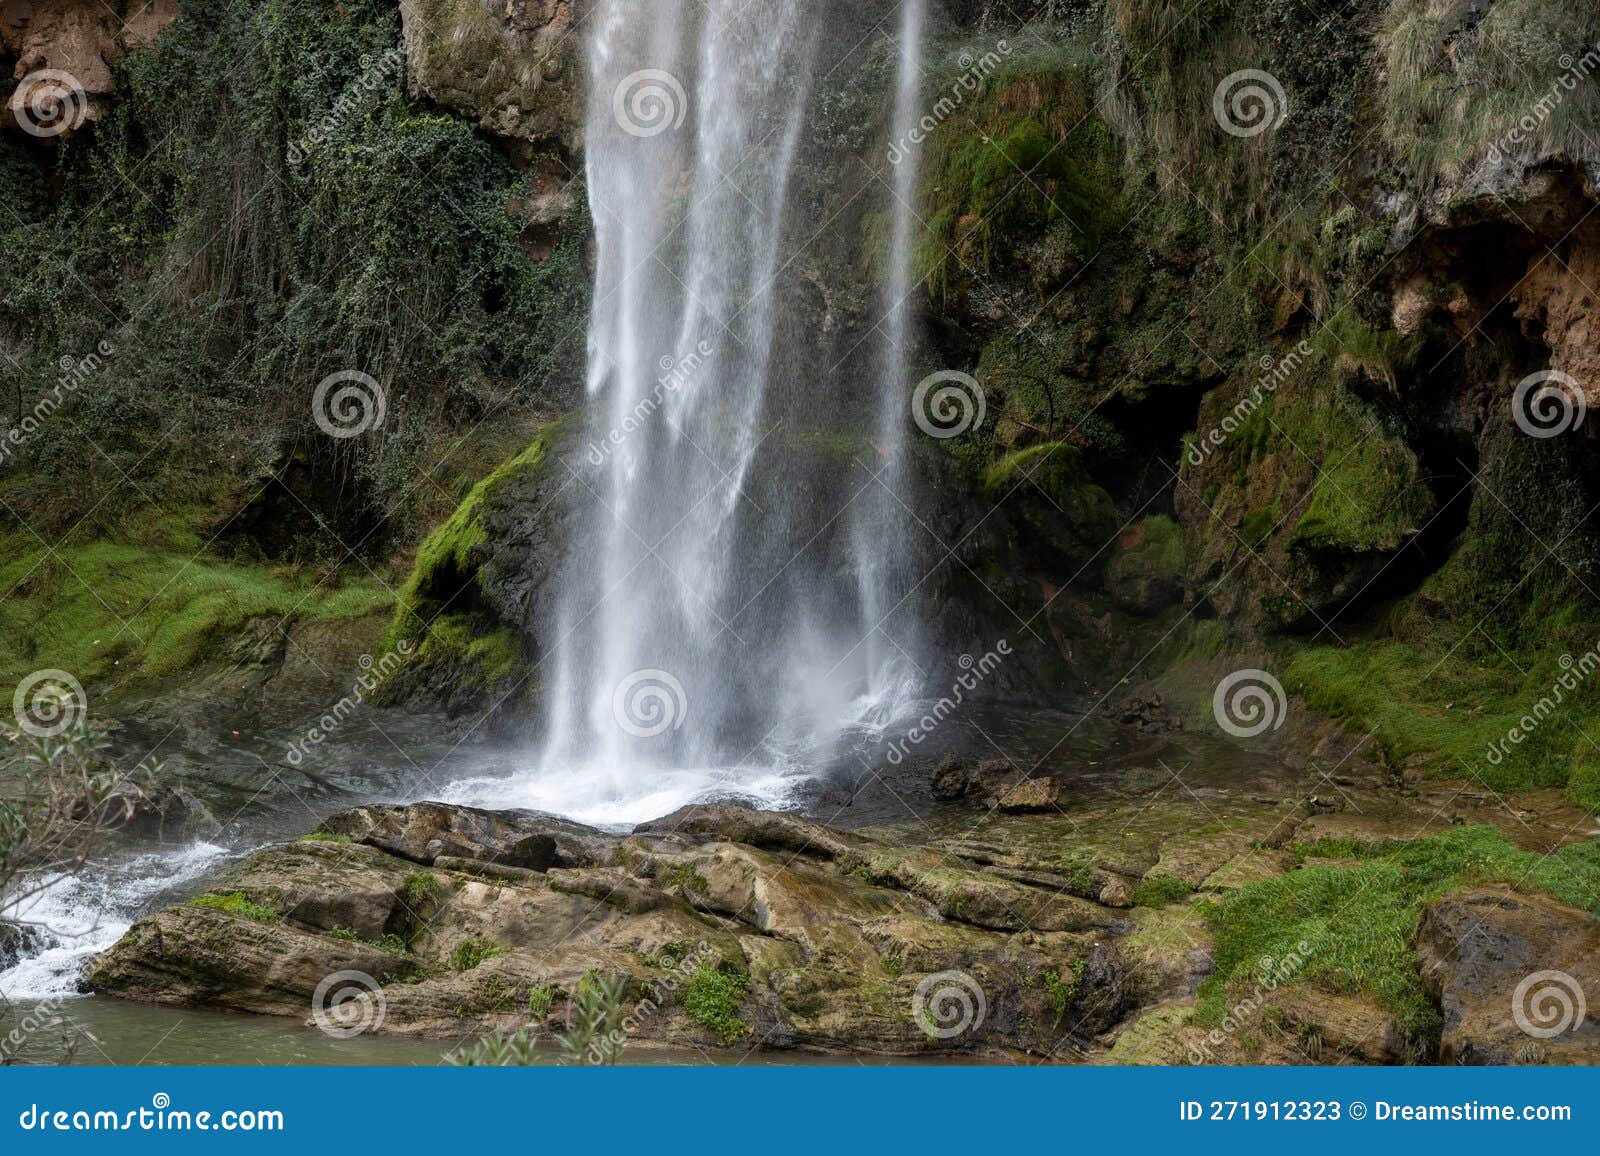 salto de la novia de navajas, waterfall in valencia, spain